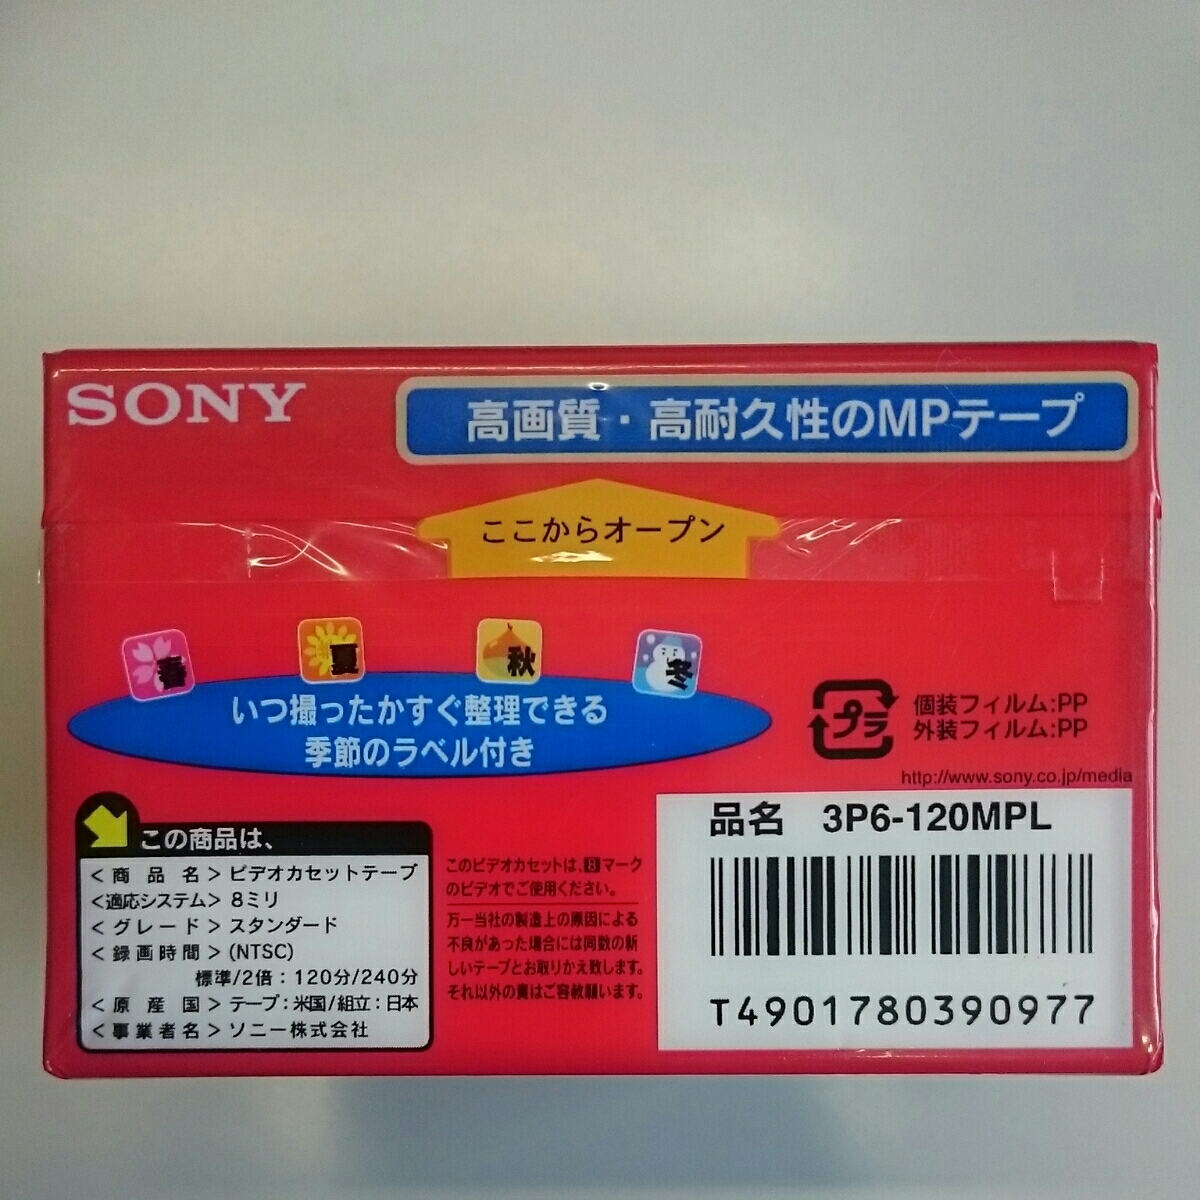 * unopened new goods * Sony 8 millimeter video cassette 120 minute MP standard 3 pcs insertion .